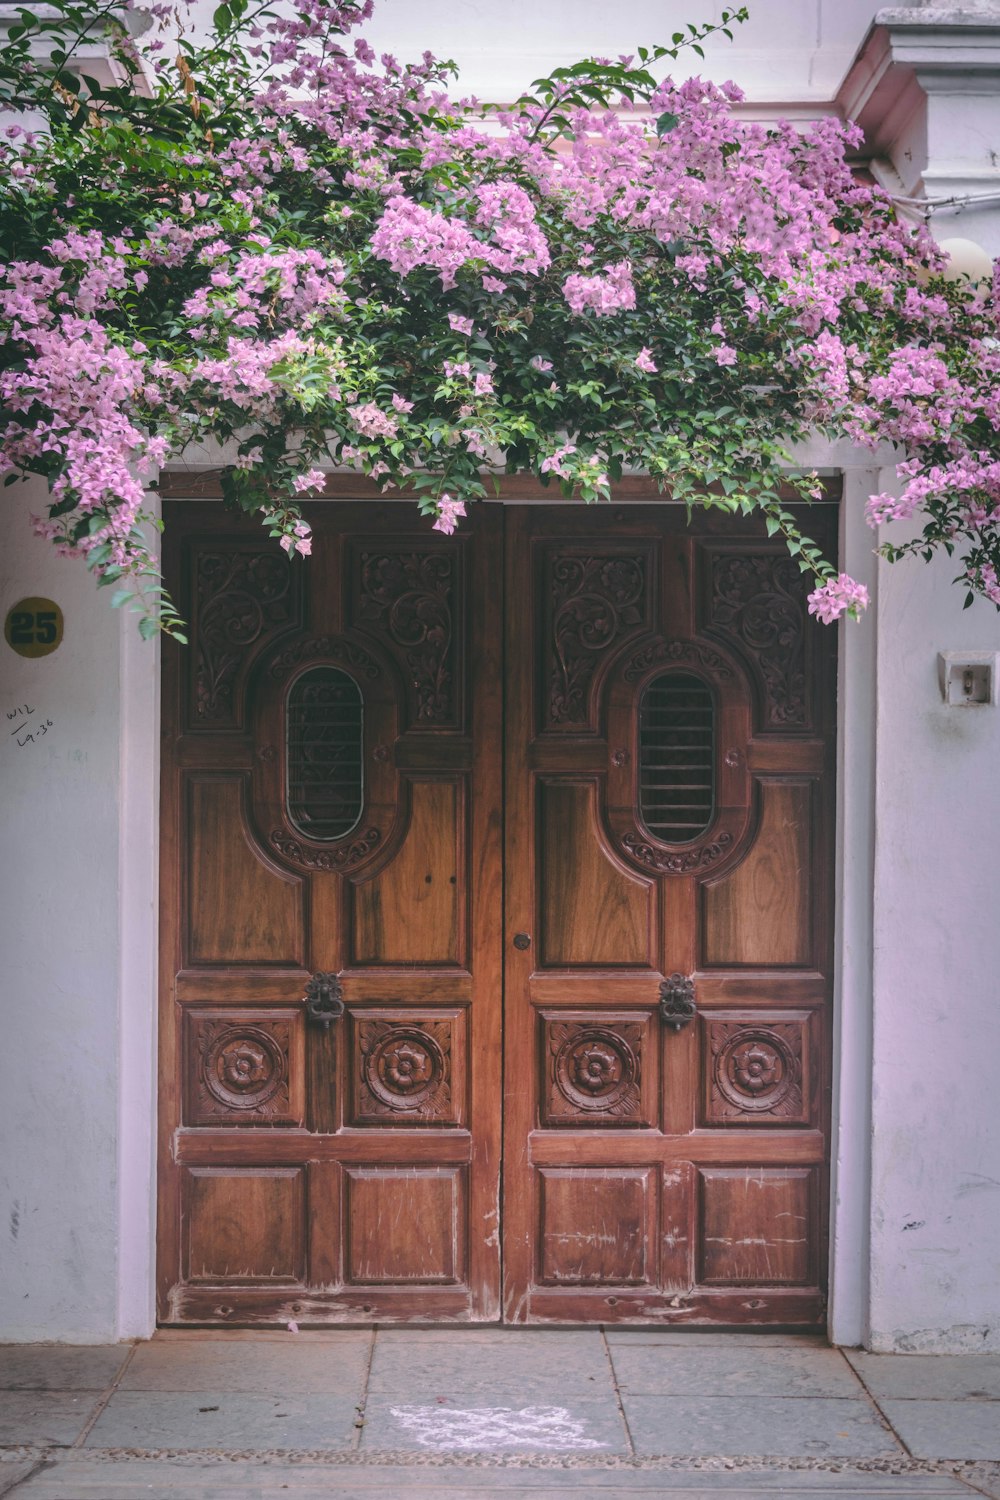 flores de buganvilla rosada sobre puertas cerradas